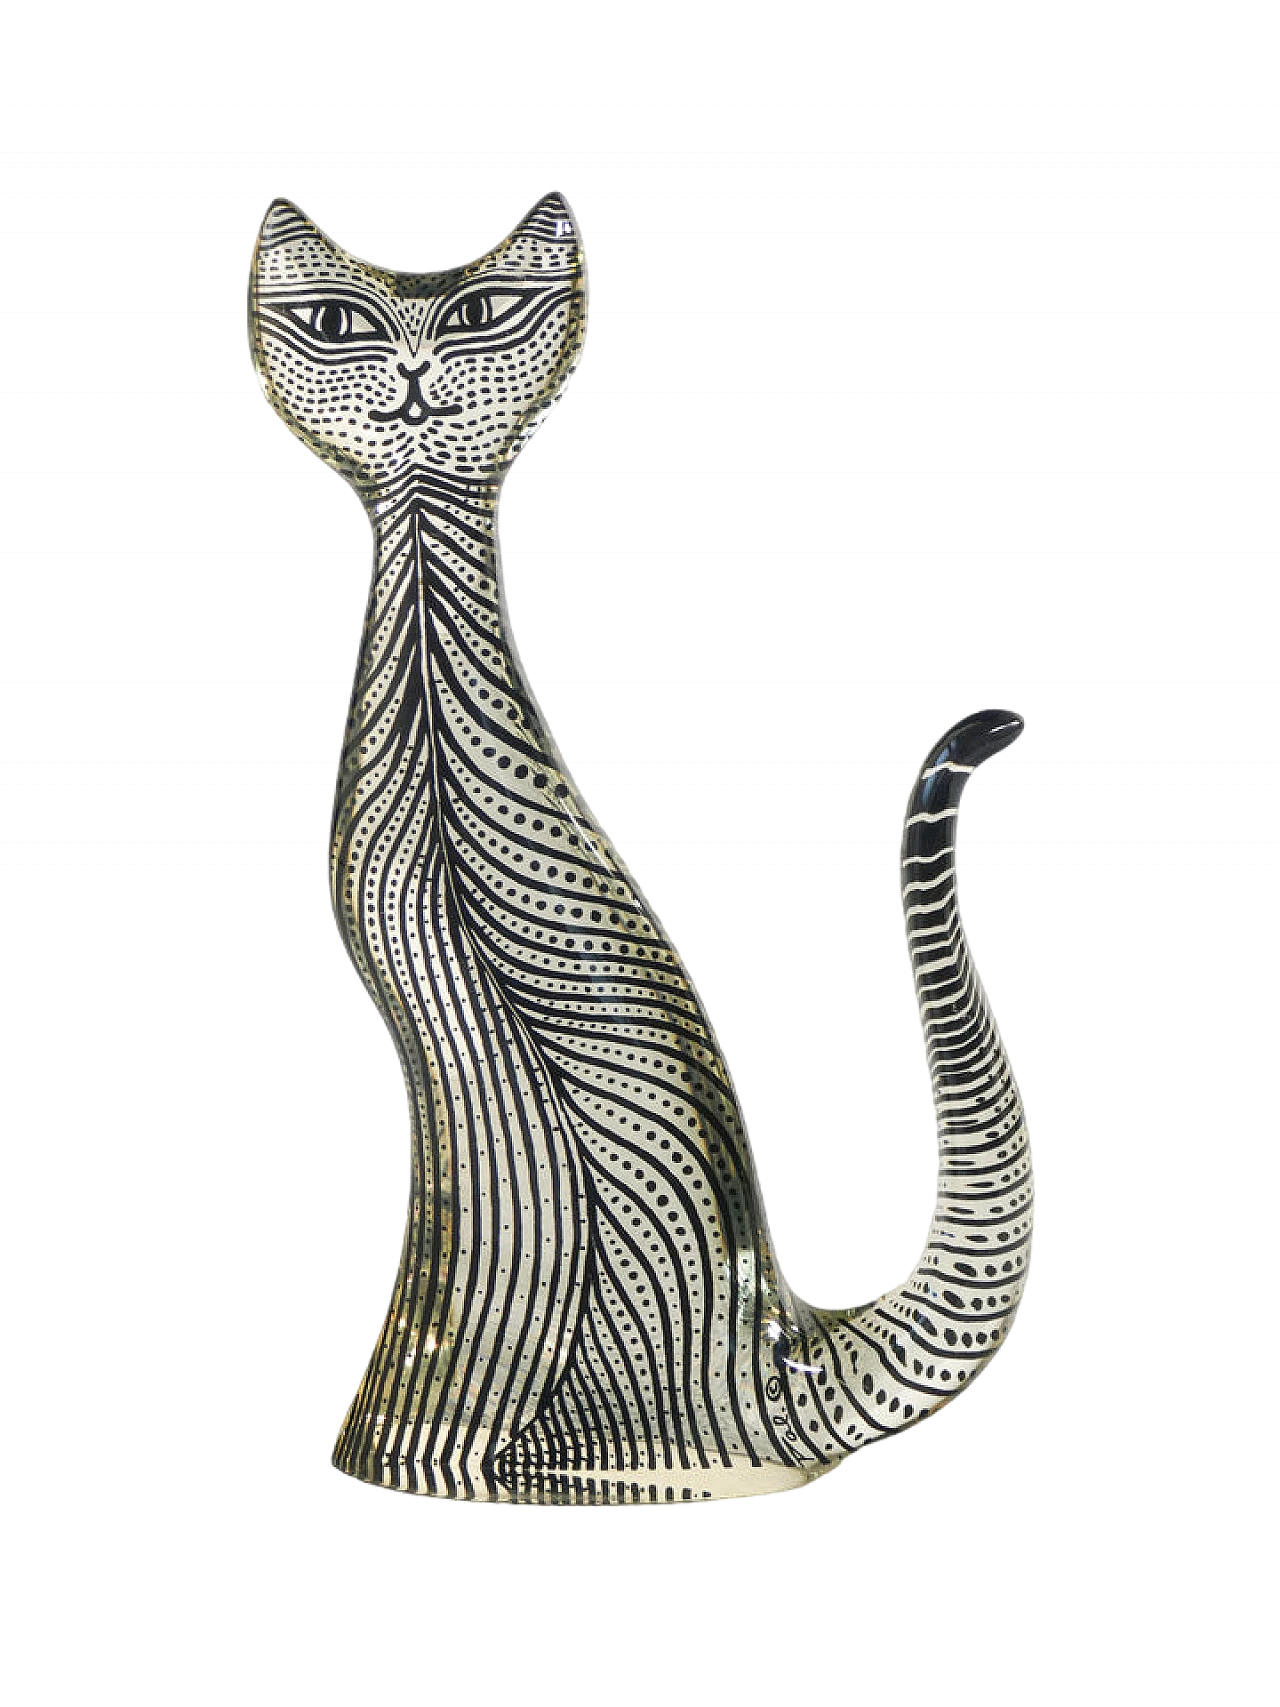 Abraham Palatnik, Cat, plexiglass sculpture, 1970s 9